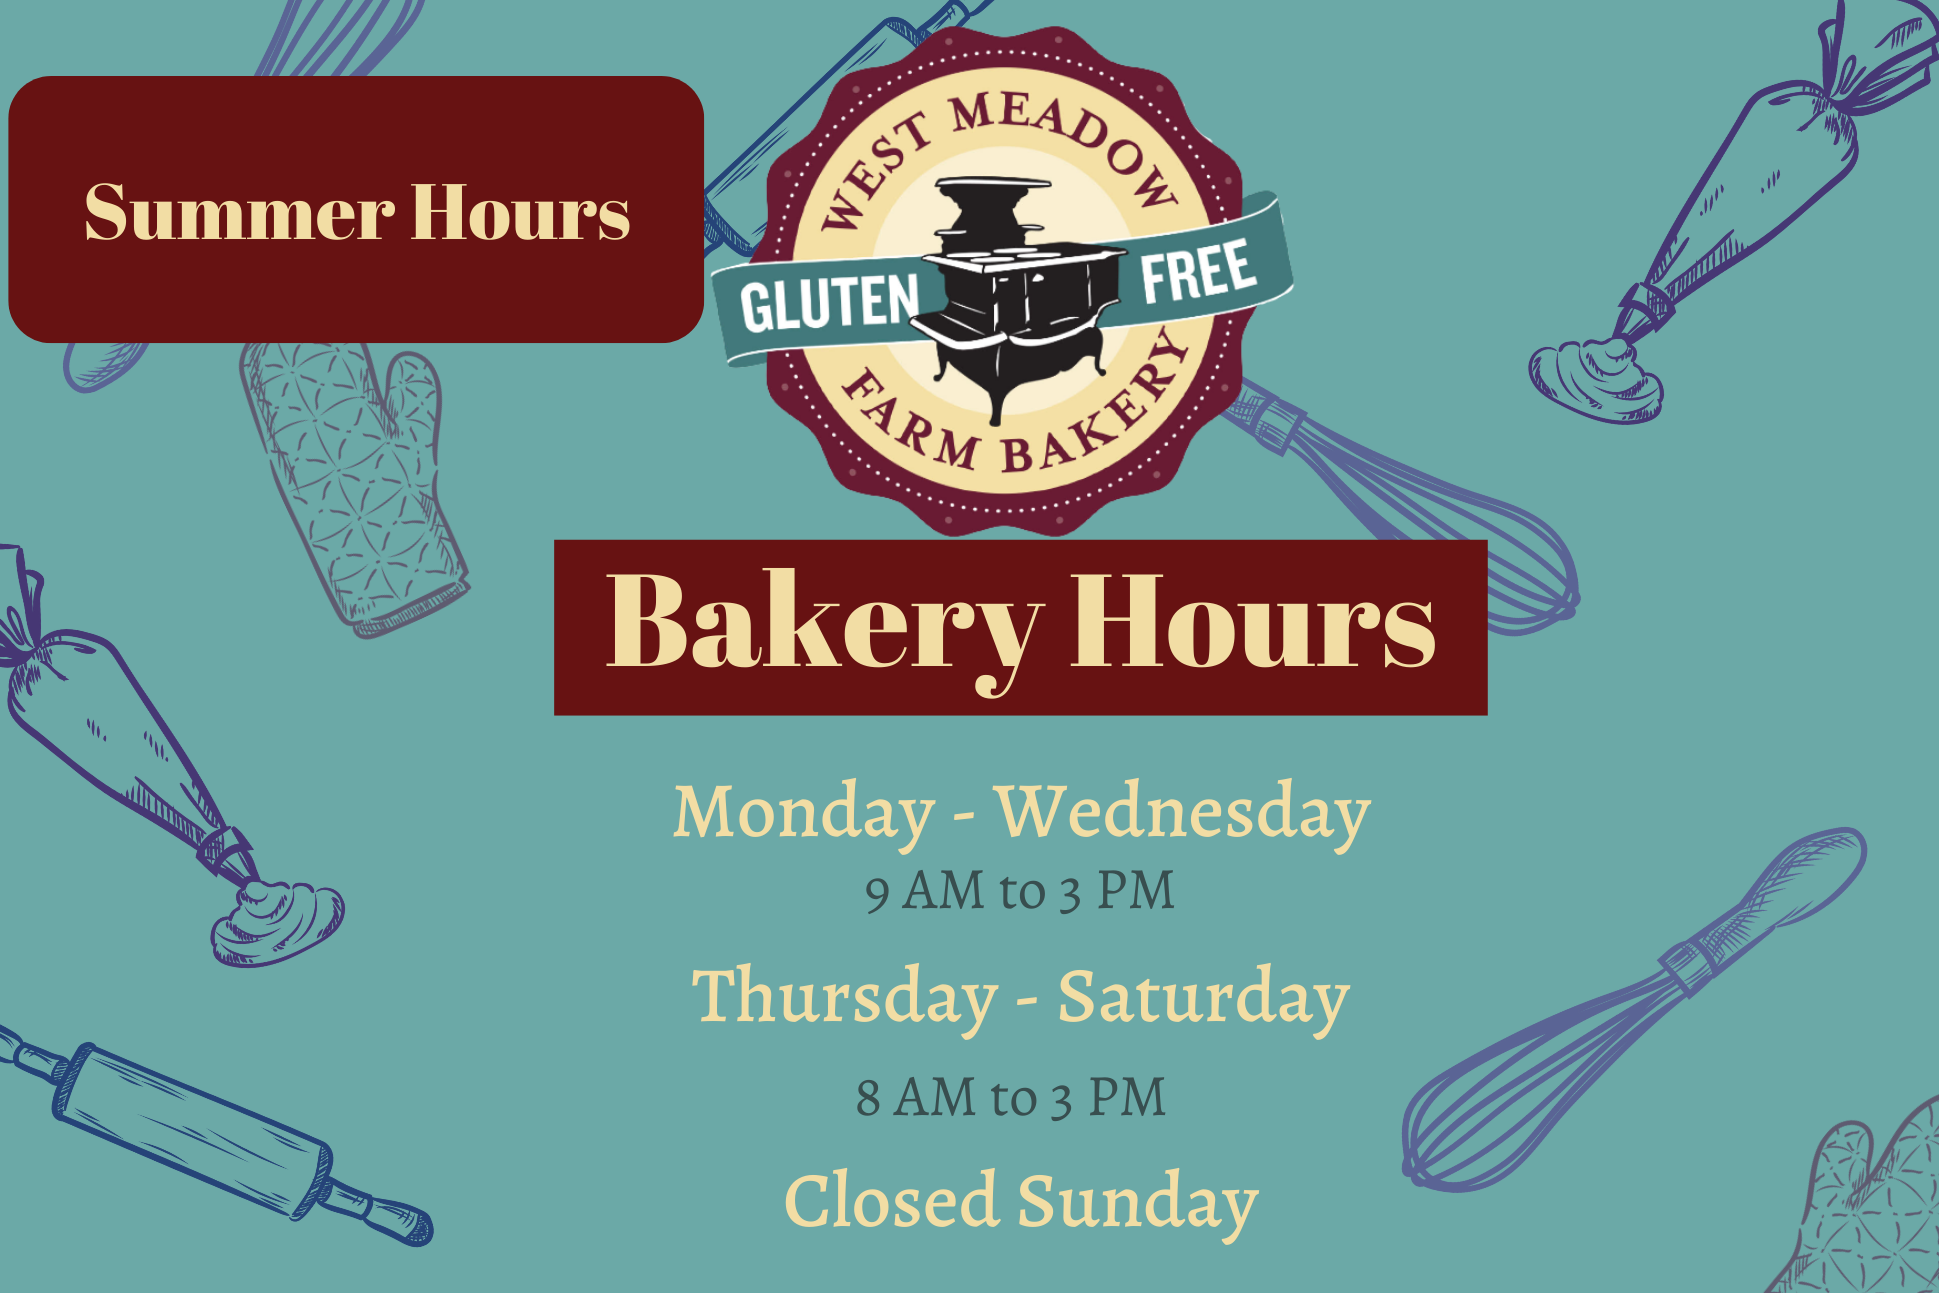 West Meadow Farm Bakery's Gluten-Free Case